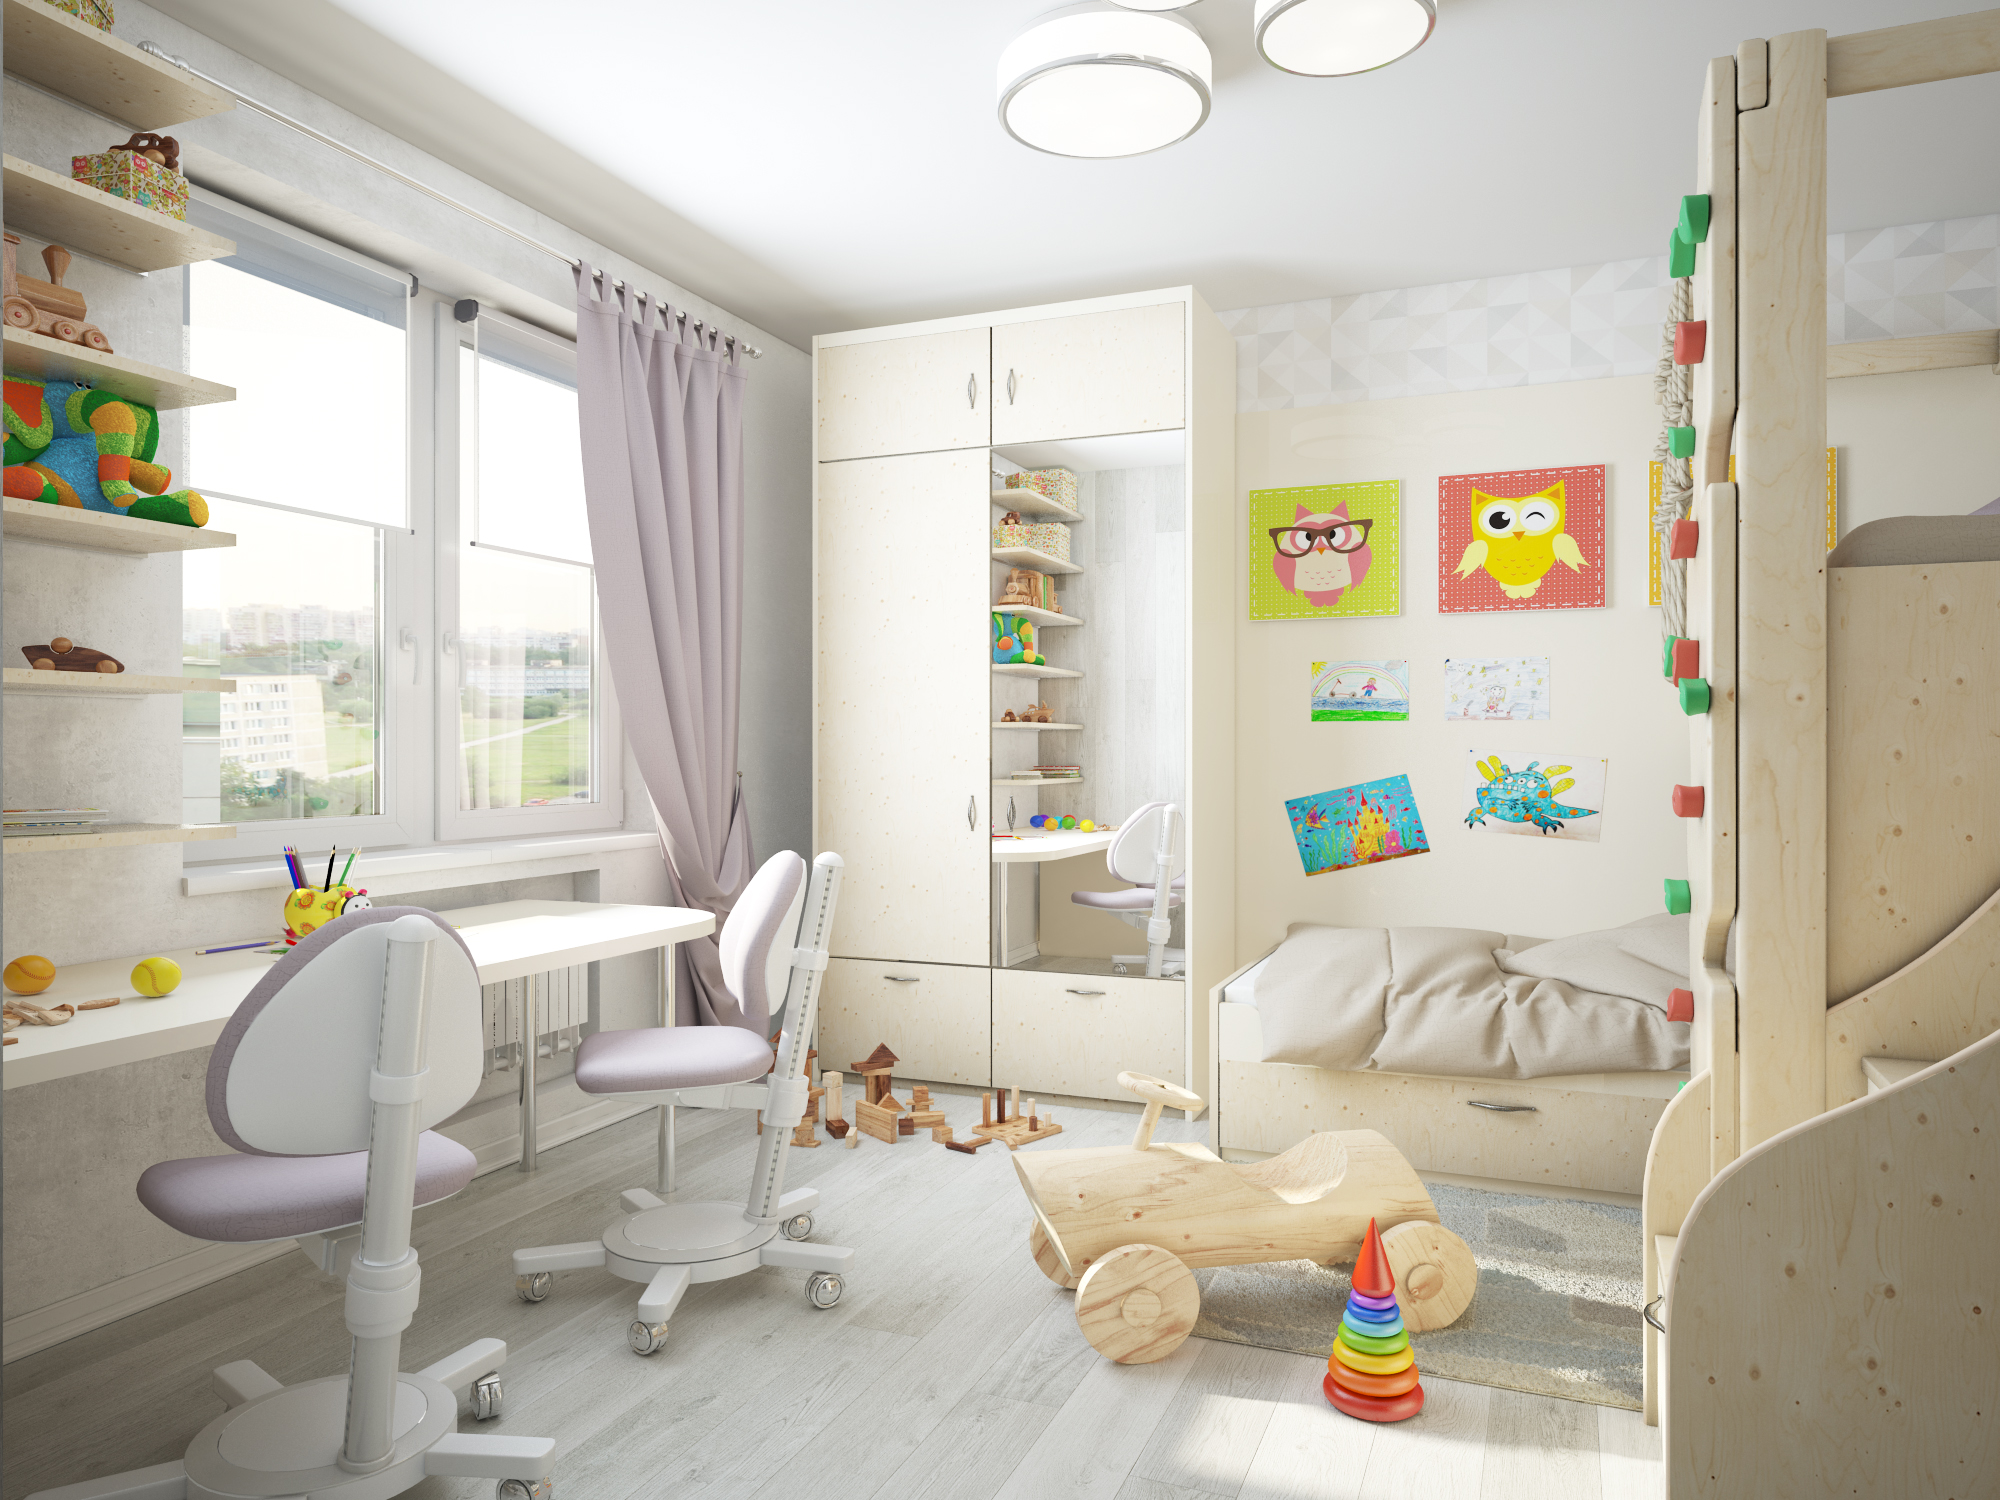 Фото № 9: Курортная мечта: светлая двухкомнатная квартира в Сочи с уютной детской